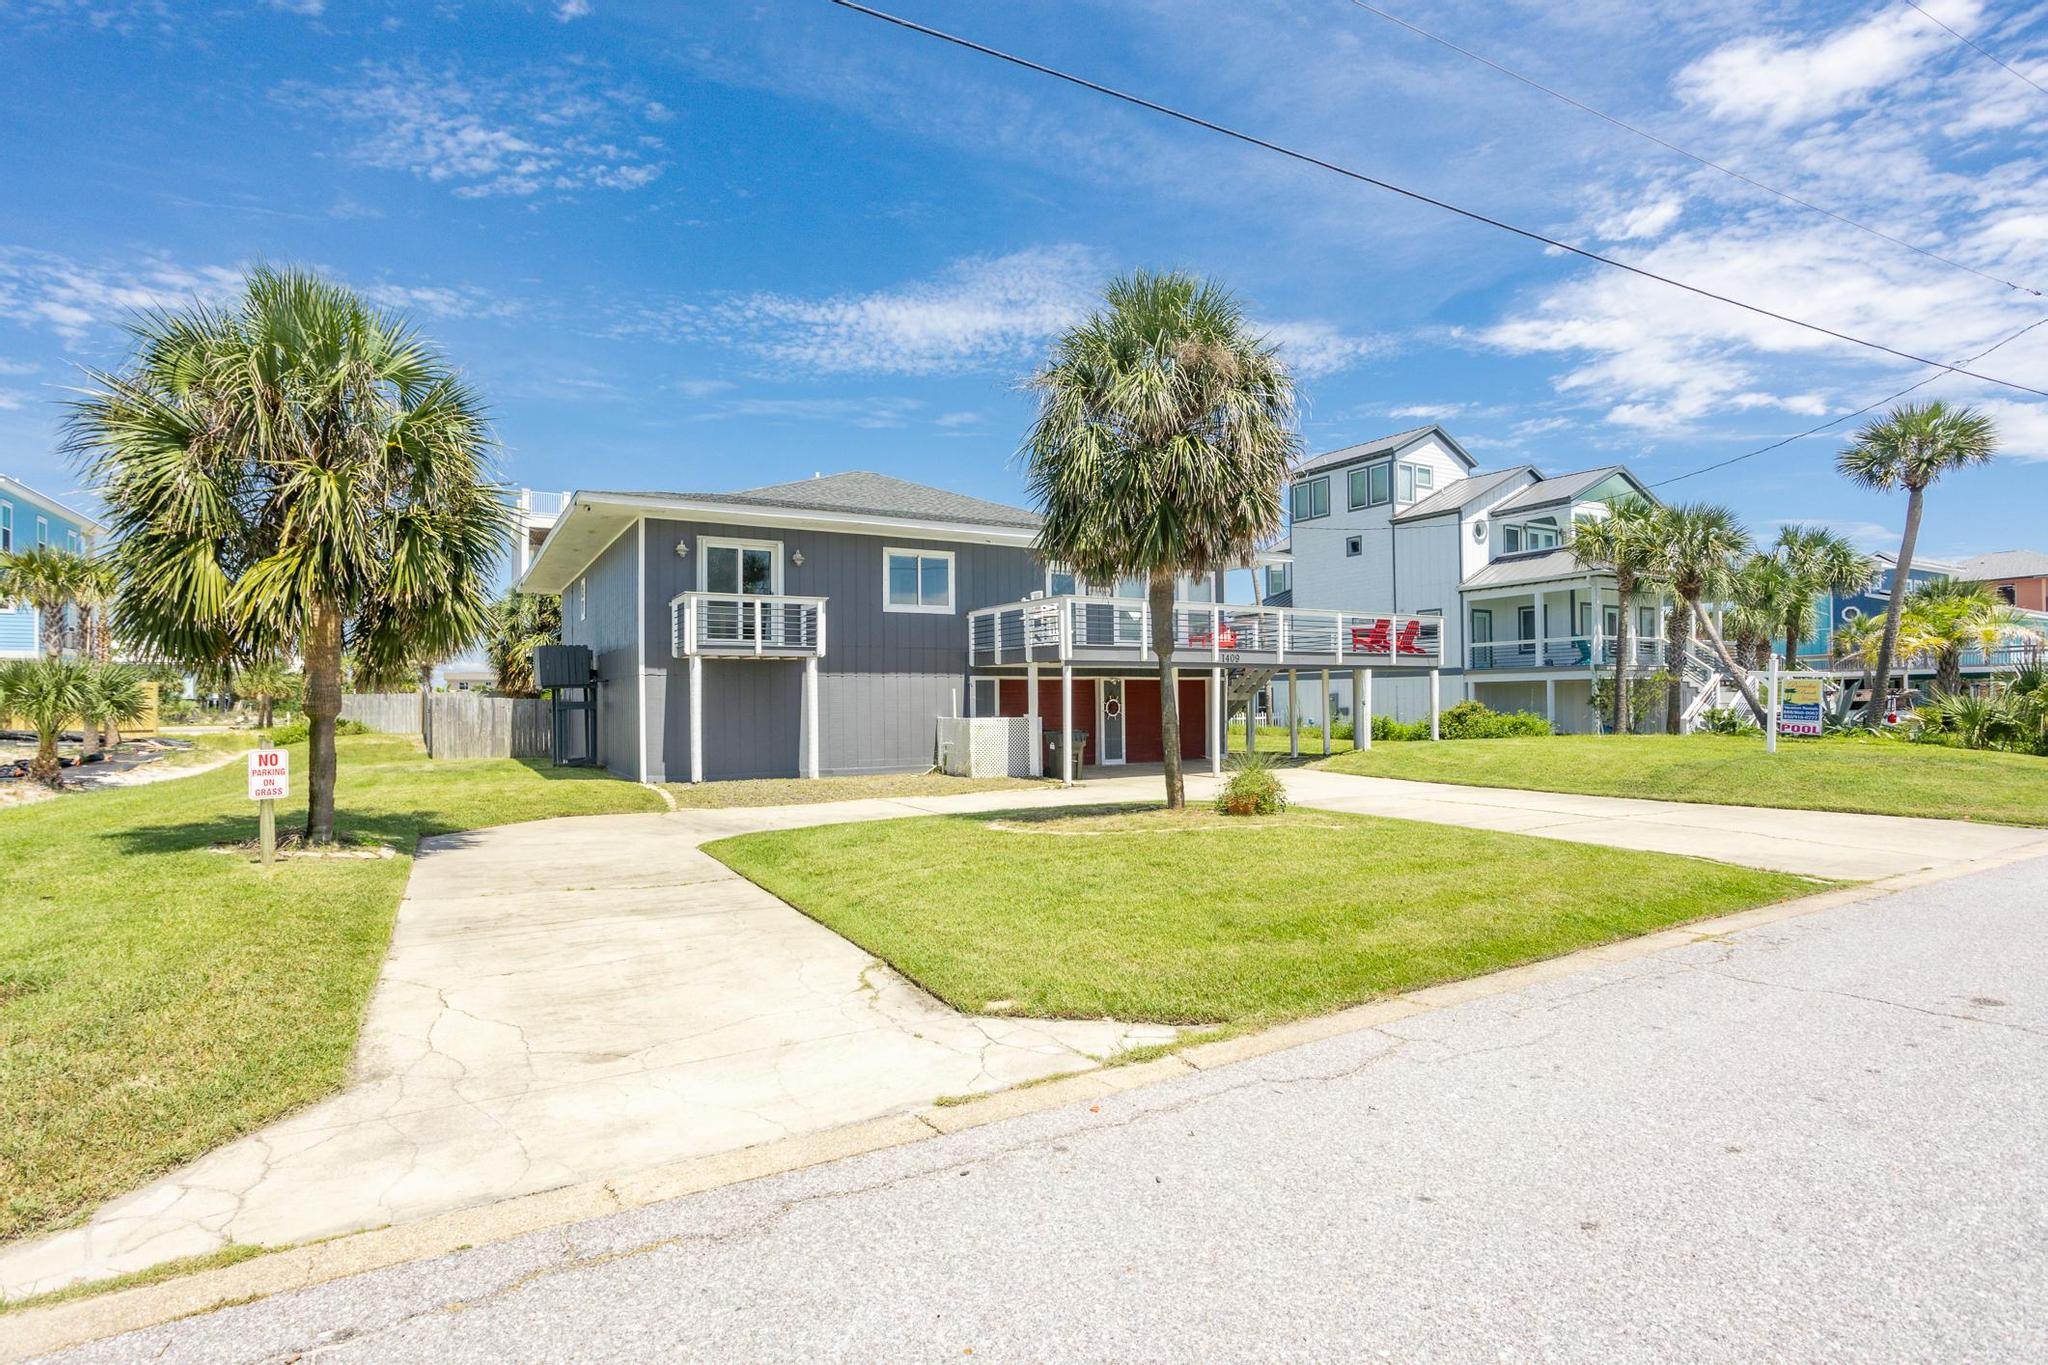 Maldonado 1409 - The Hip * Nautic House / Cottage rental in Pensacola Beach House Rentals in Pensacola Beach Florida - #20